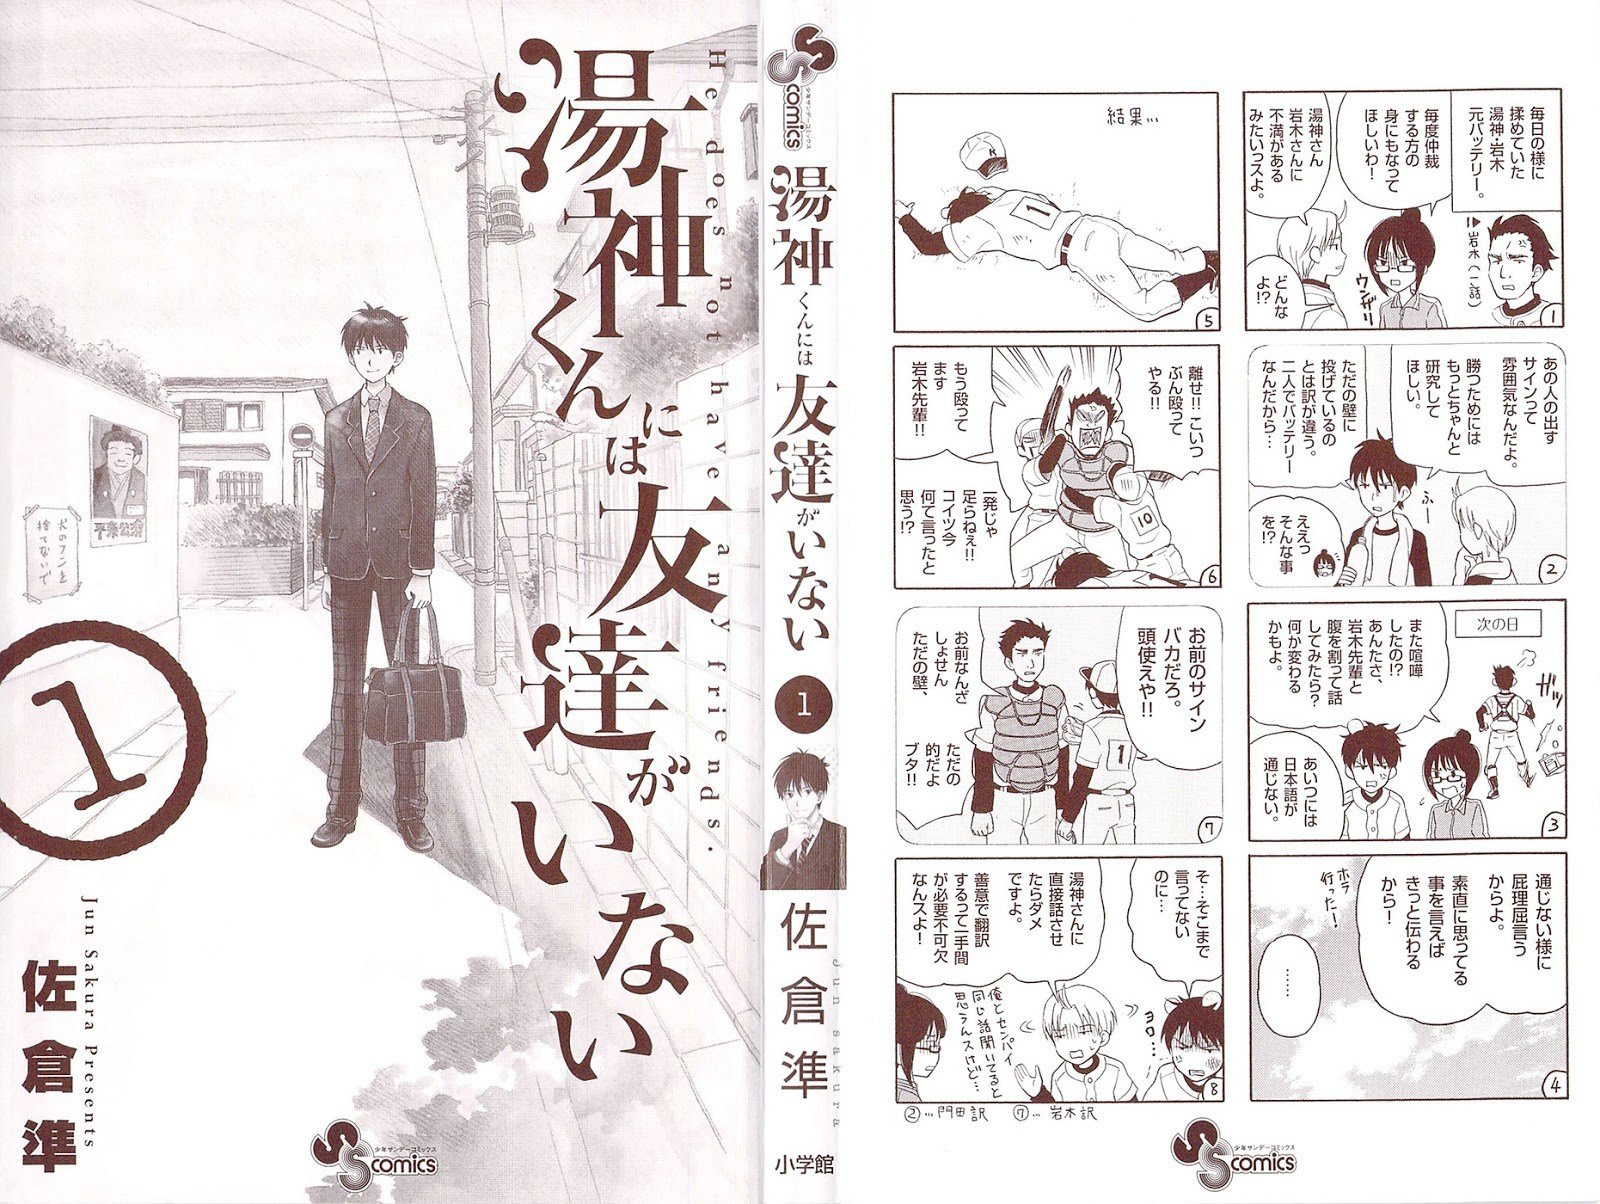 Baca Yugami-kun ni wa Tomodachi ga Inai Chapter 1  - GudangKomik